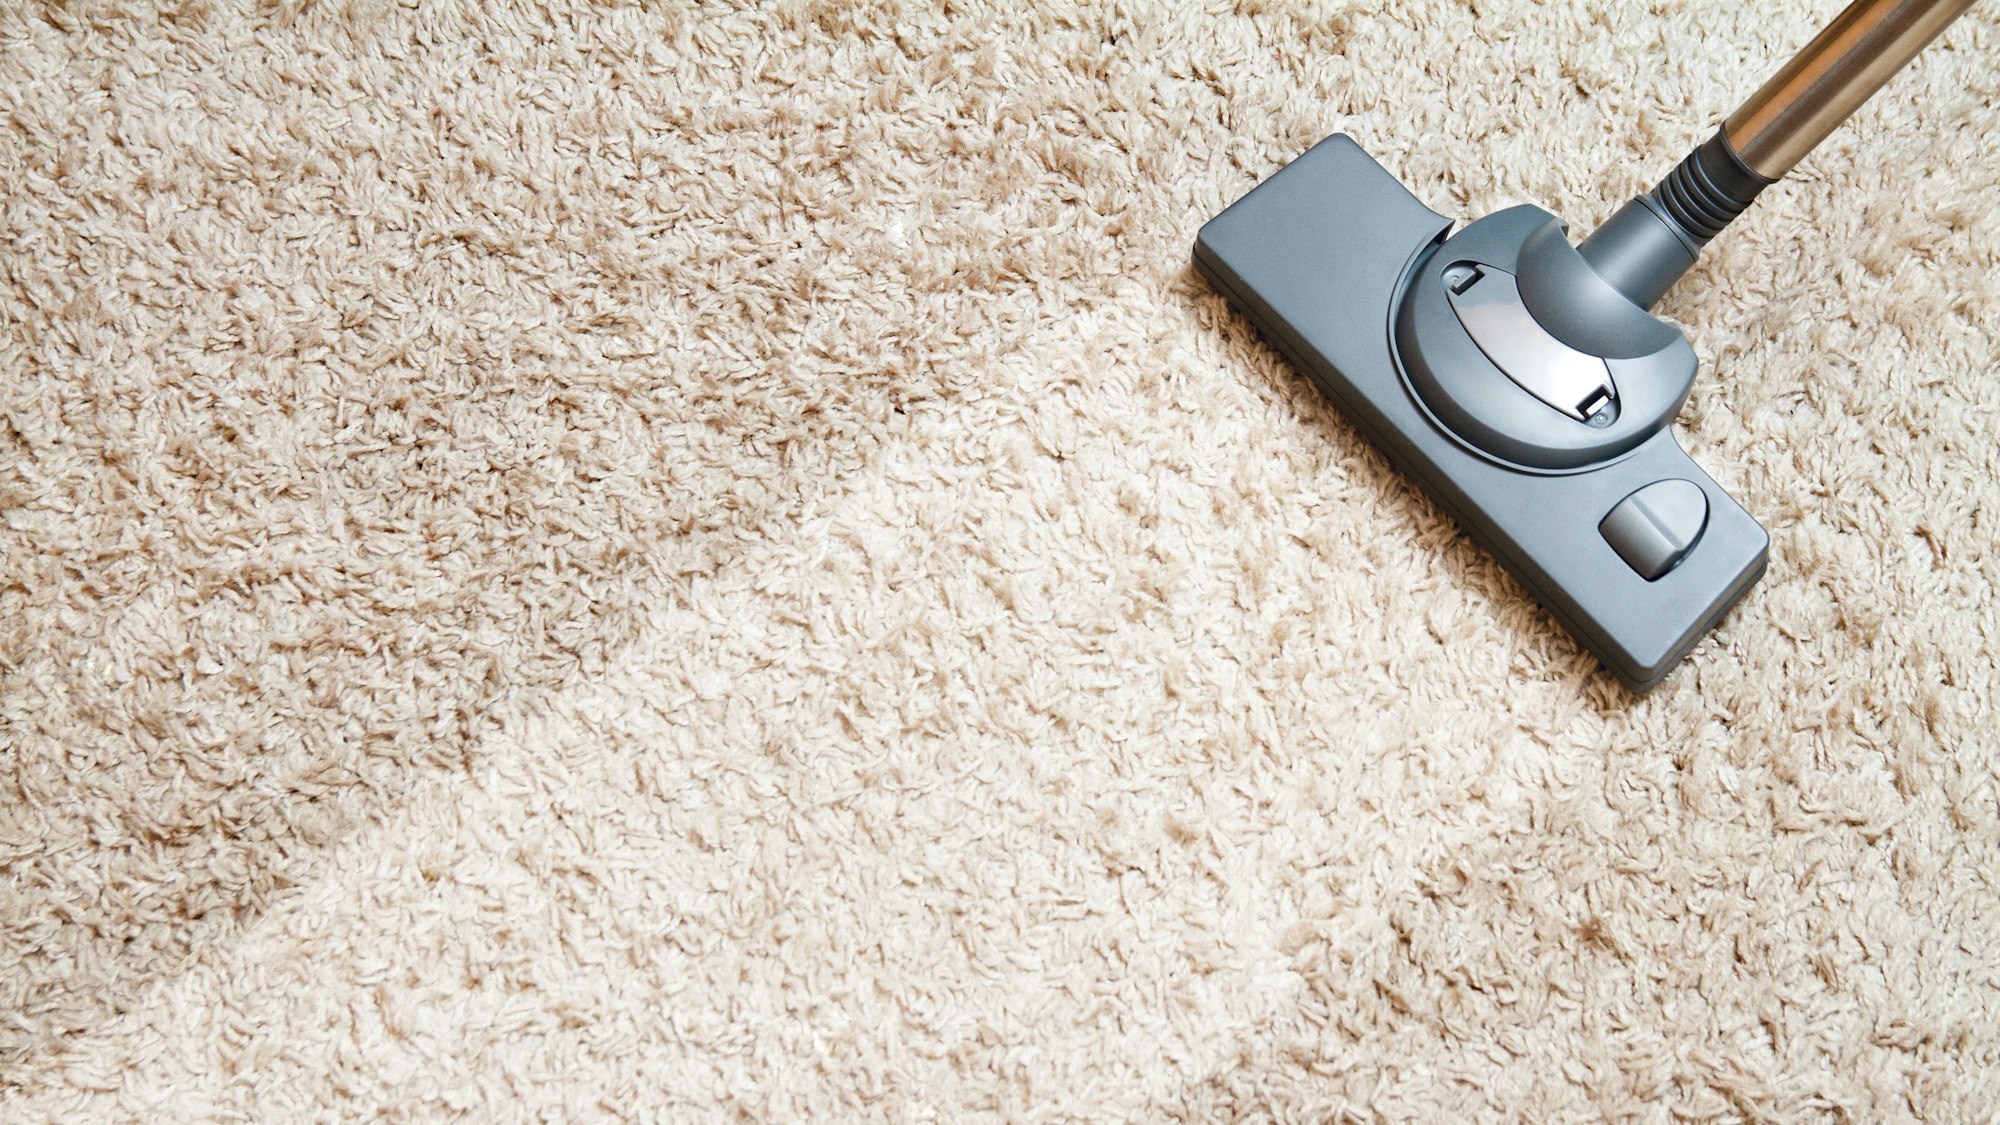 Teppich reinigen: Die besten Hausmittel & Tipps